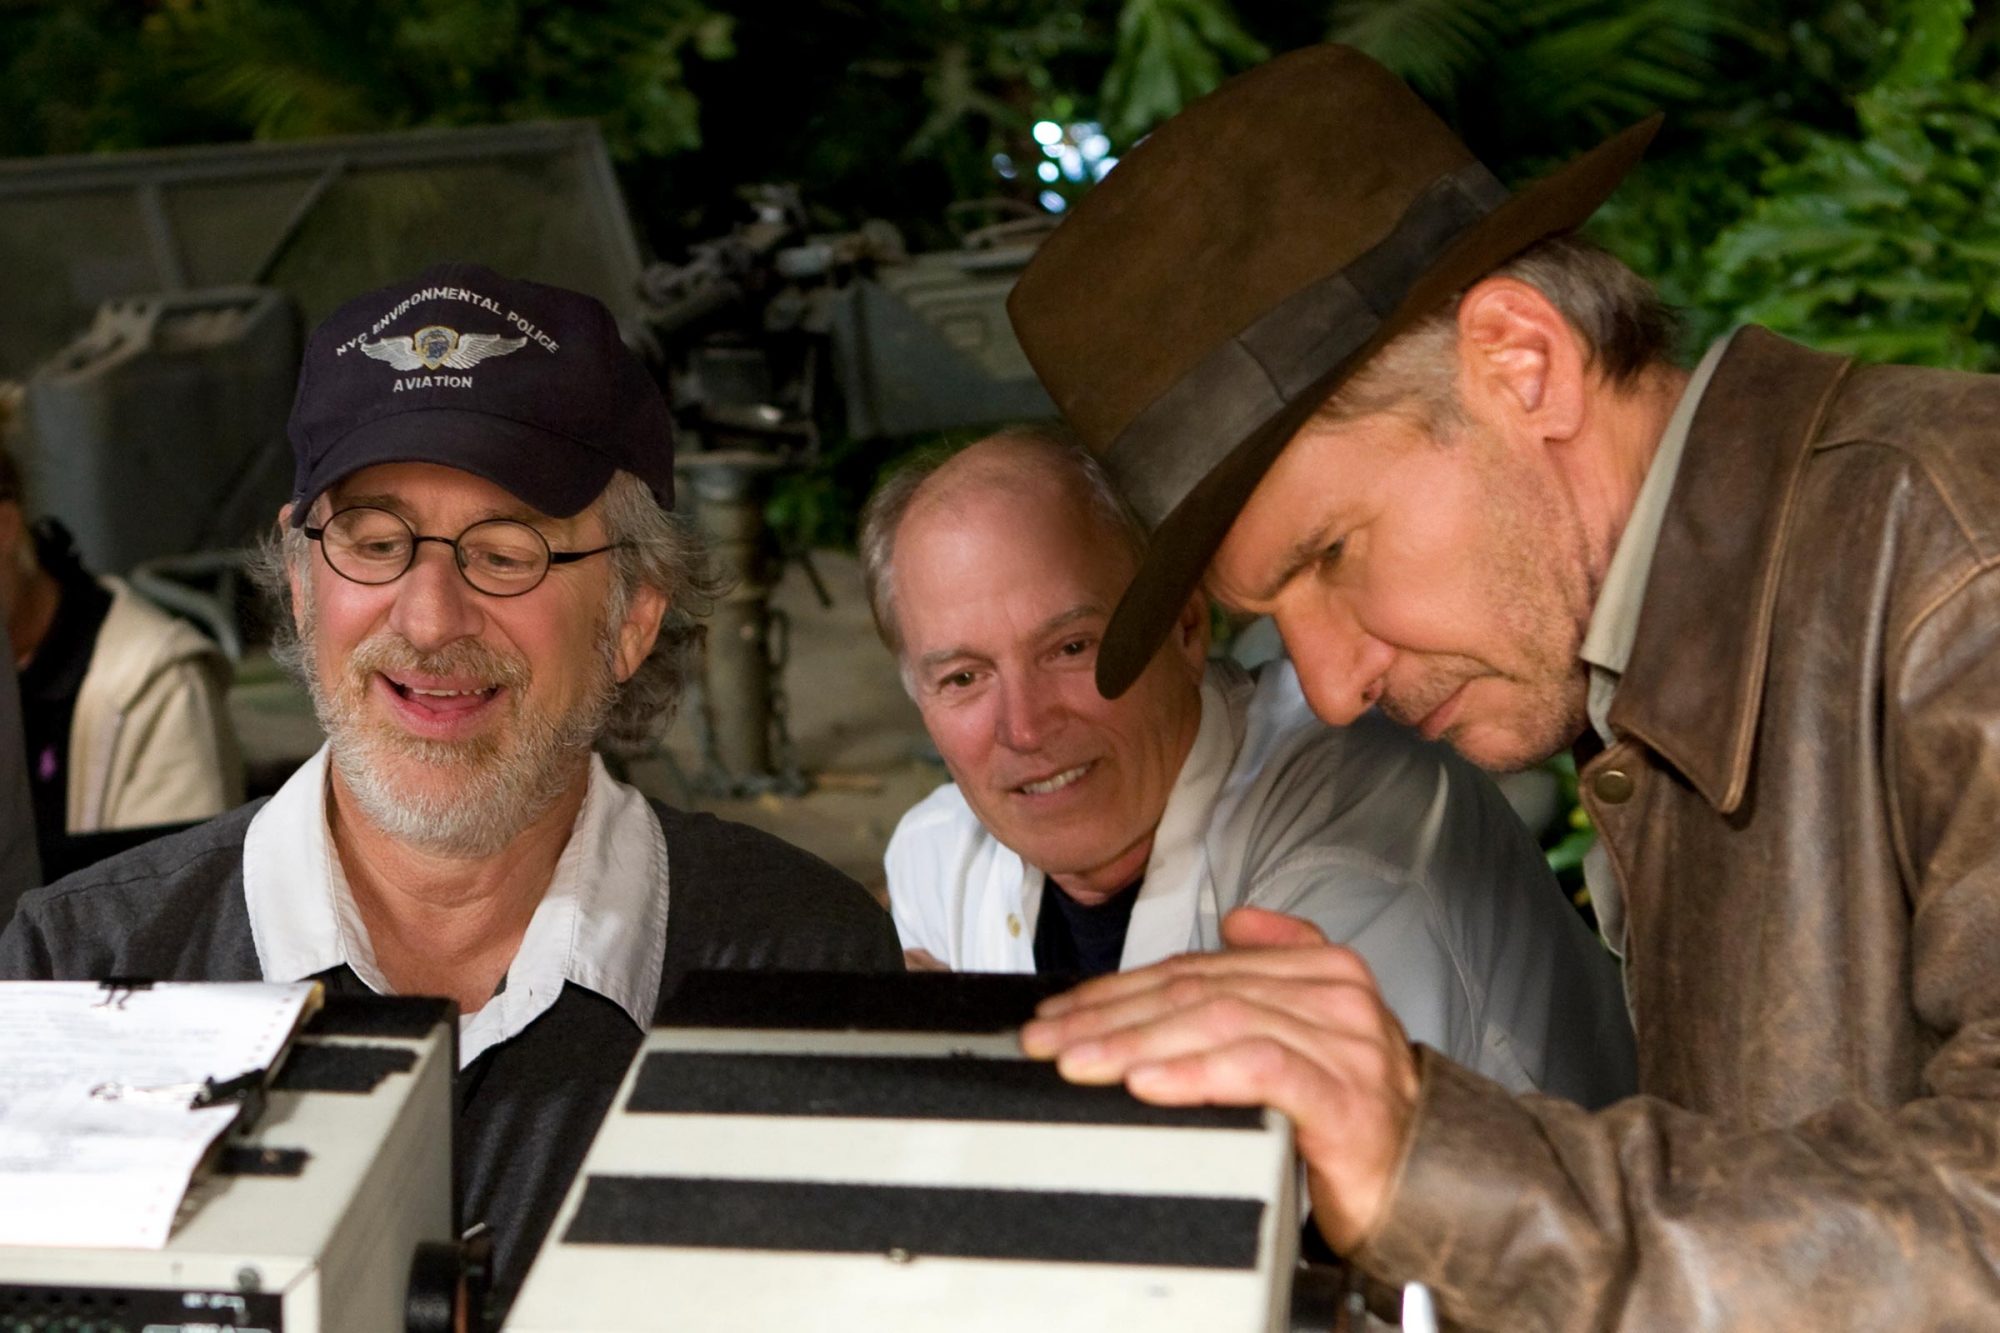 Steven Spielberg Indiana Jones